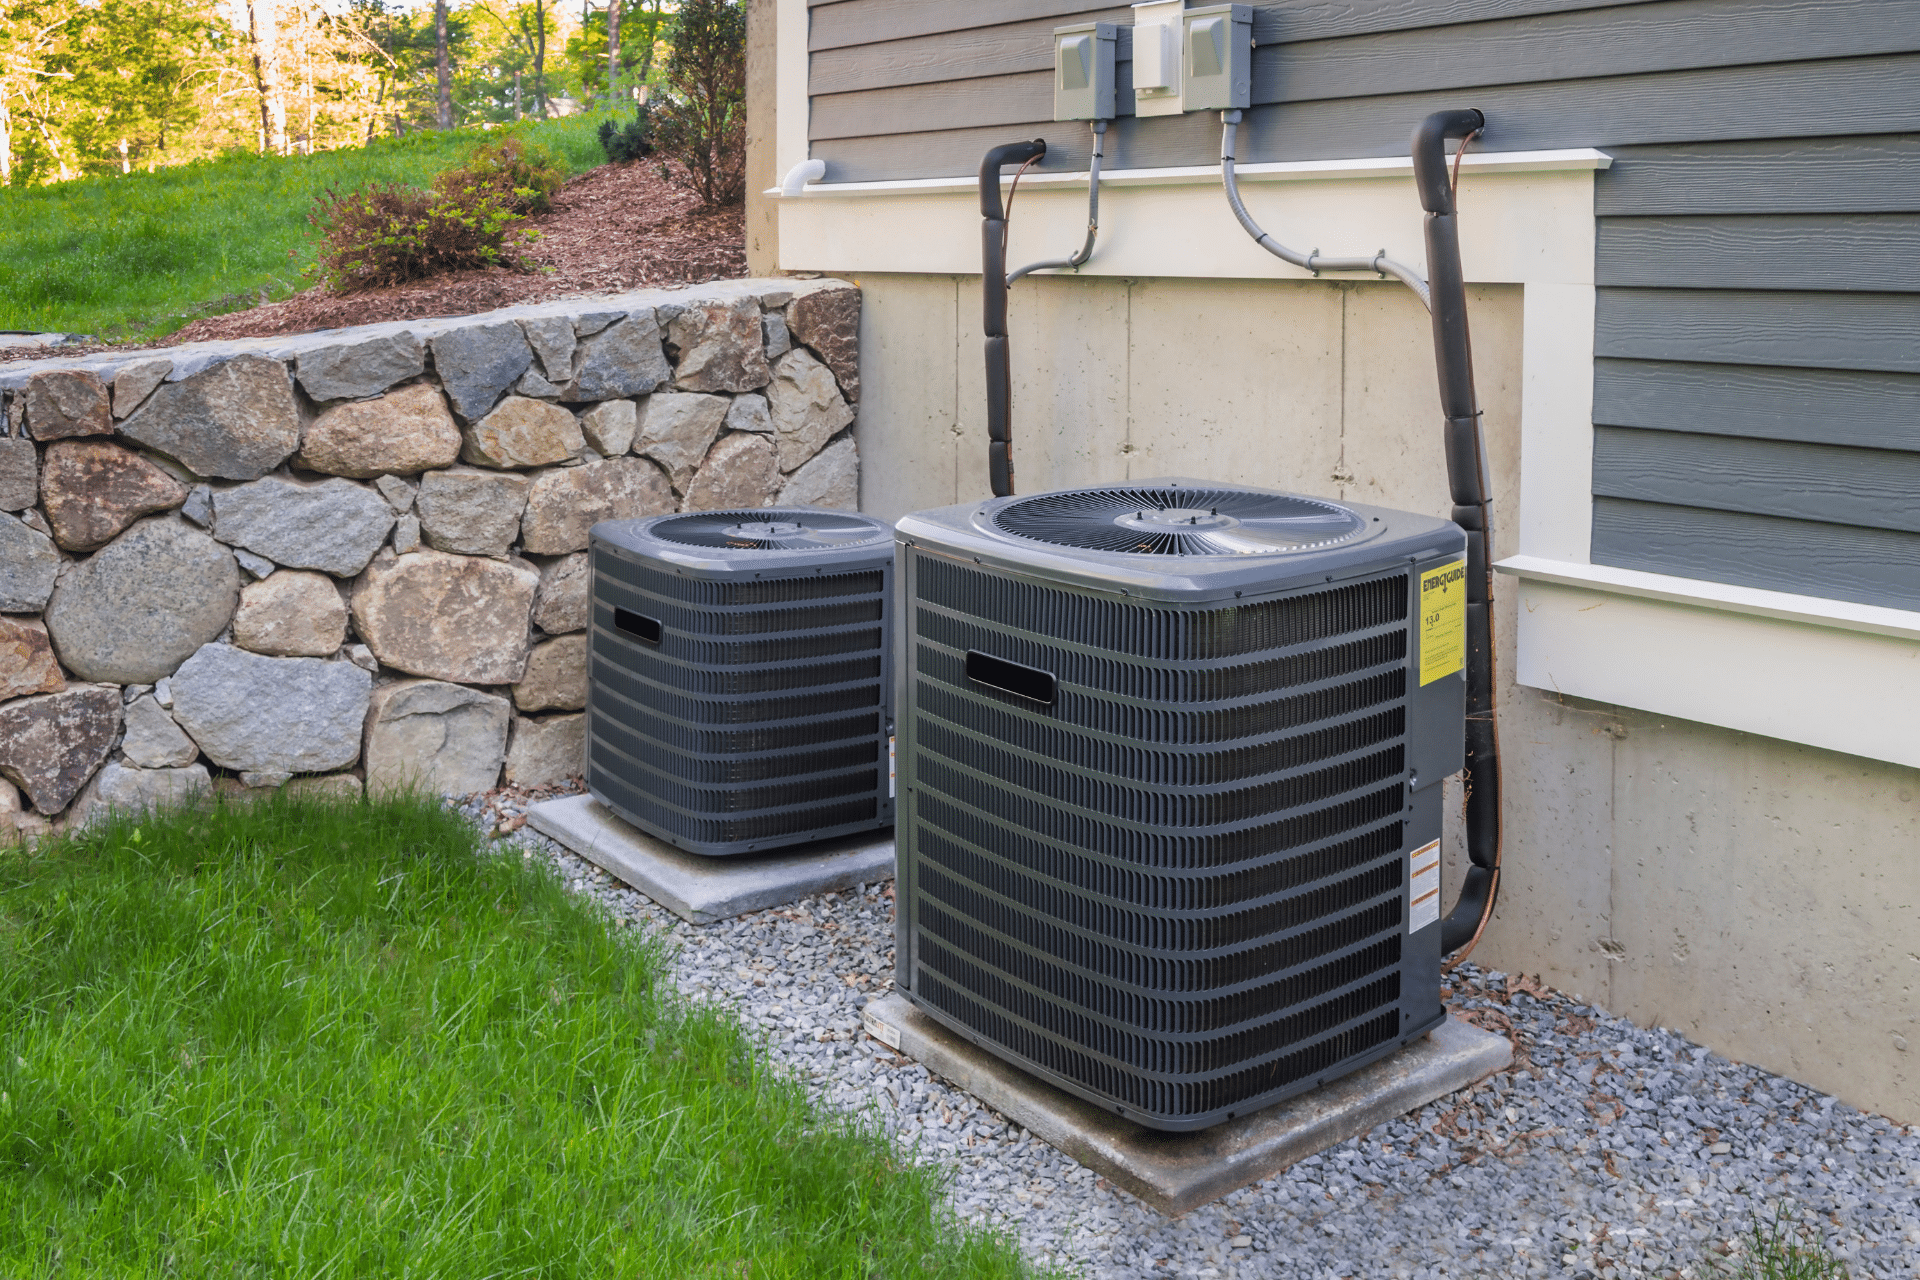 HVAC units outside a home